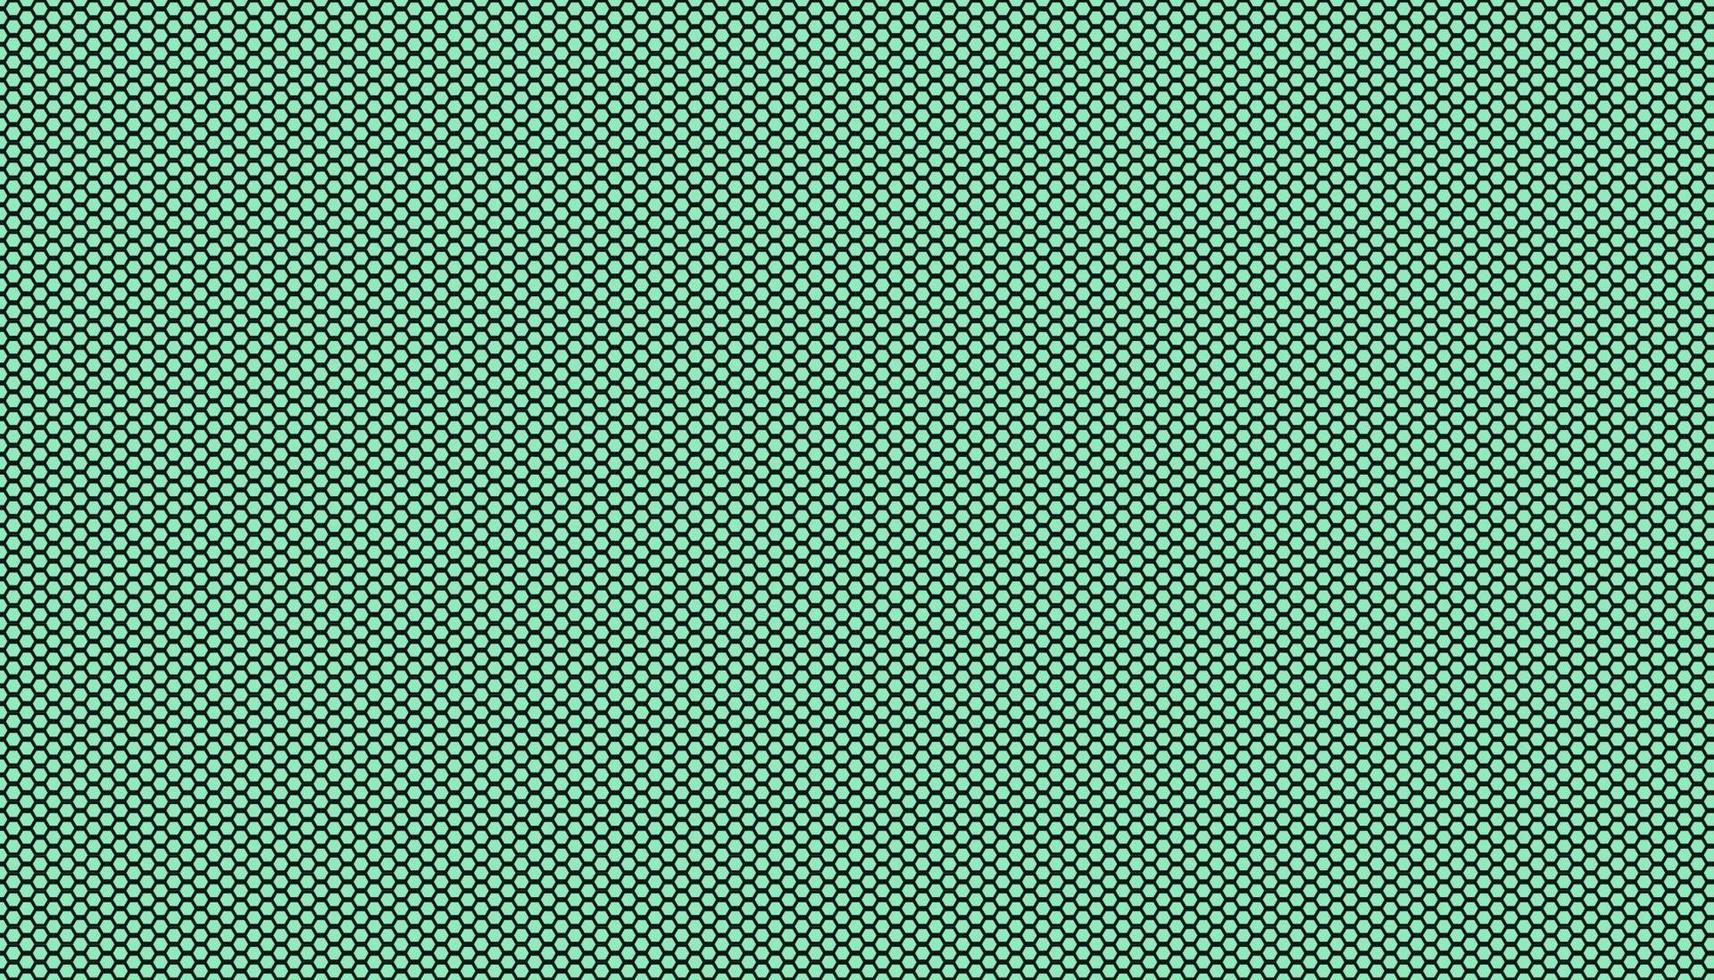 moderna tonalità di colore opaco verde menta neo e griglia senza giunture esagonale a nido d'ape motivo dimensionale di sfondo. concetto di fusione di natura, tecnologia e scienza. vettore